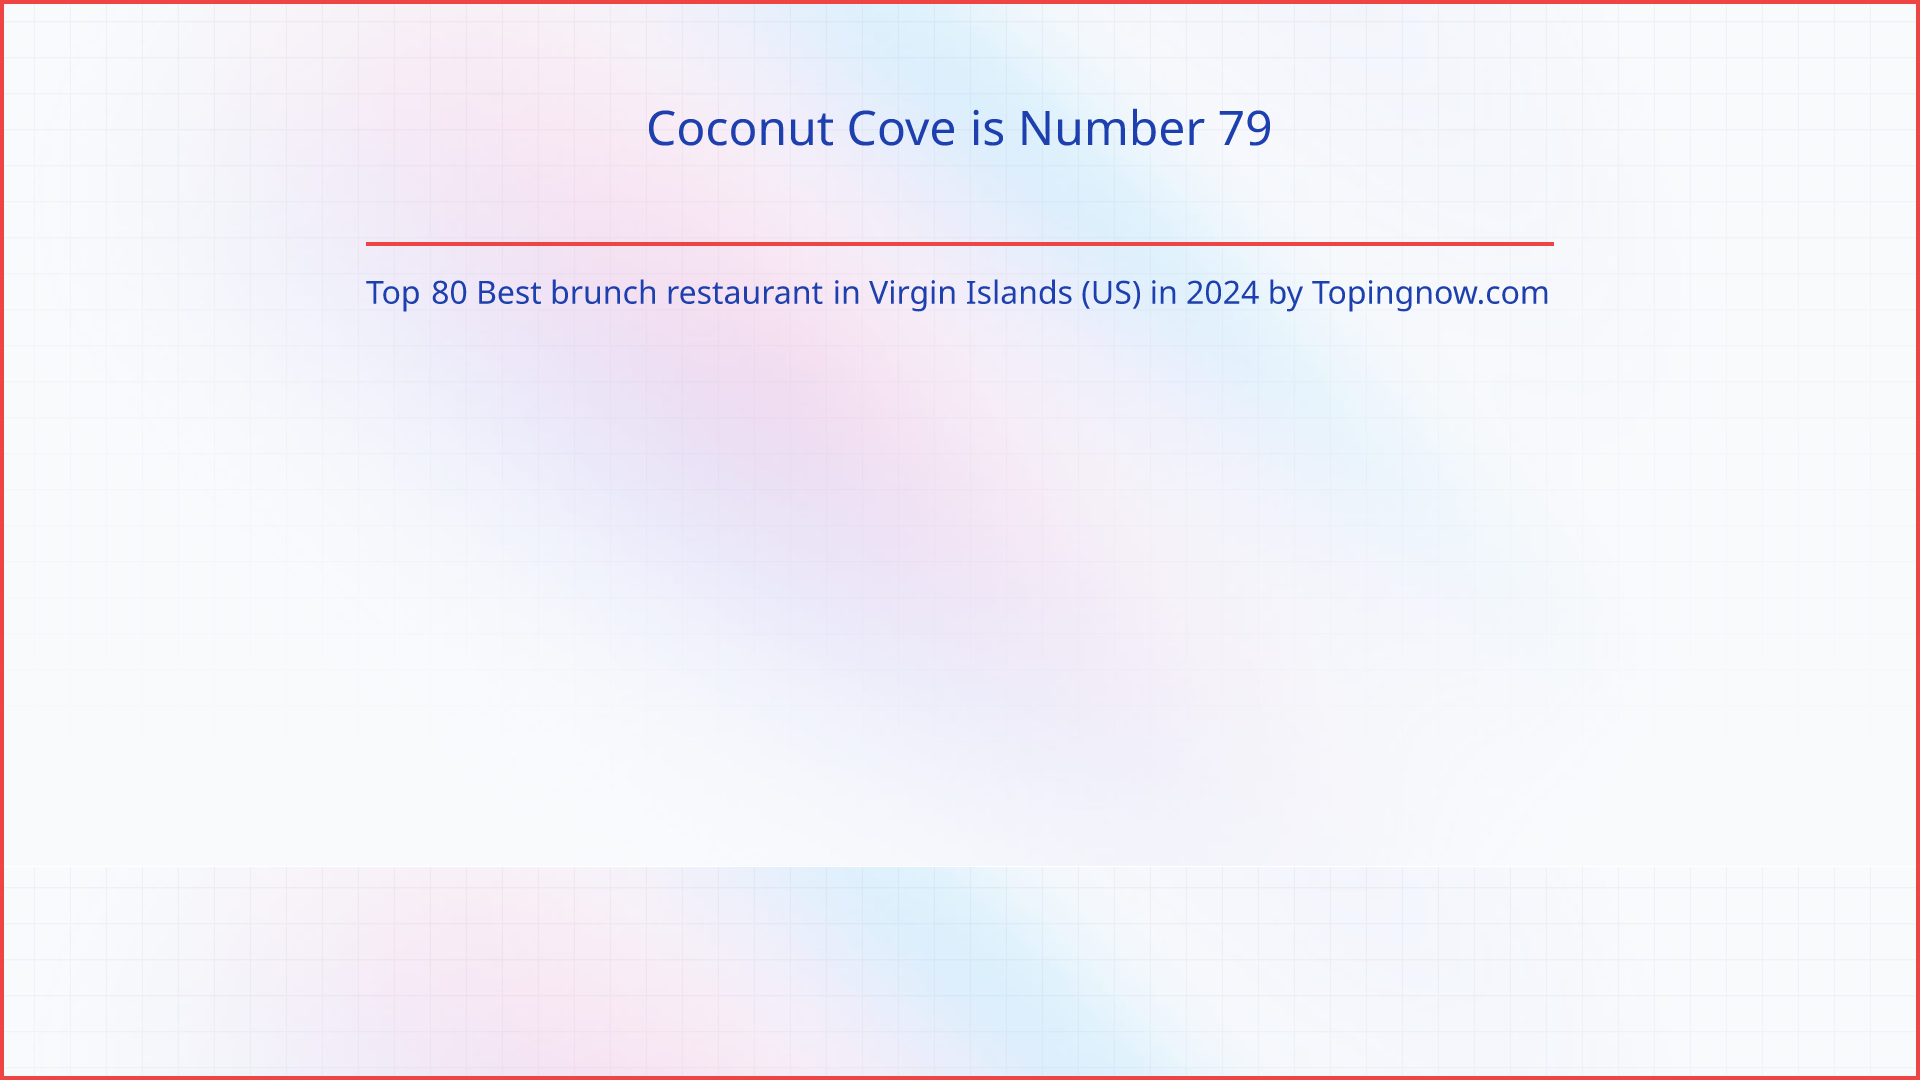 Coconut Cove: Top 80 Best brunch restaurant in Virgin Islands (US) in 2024